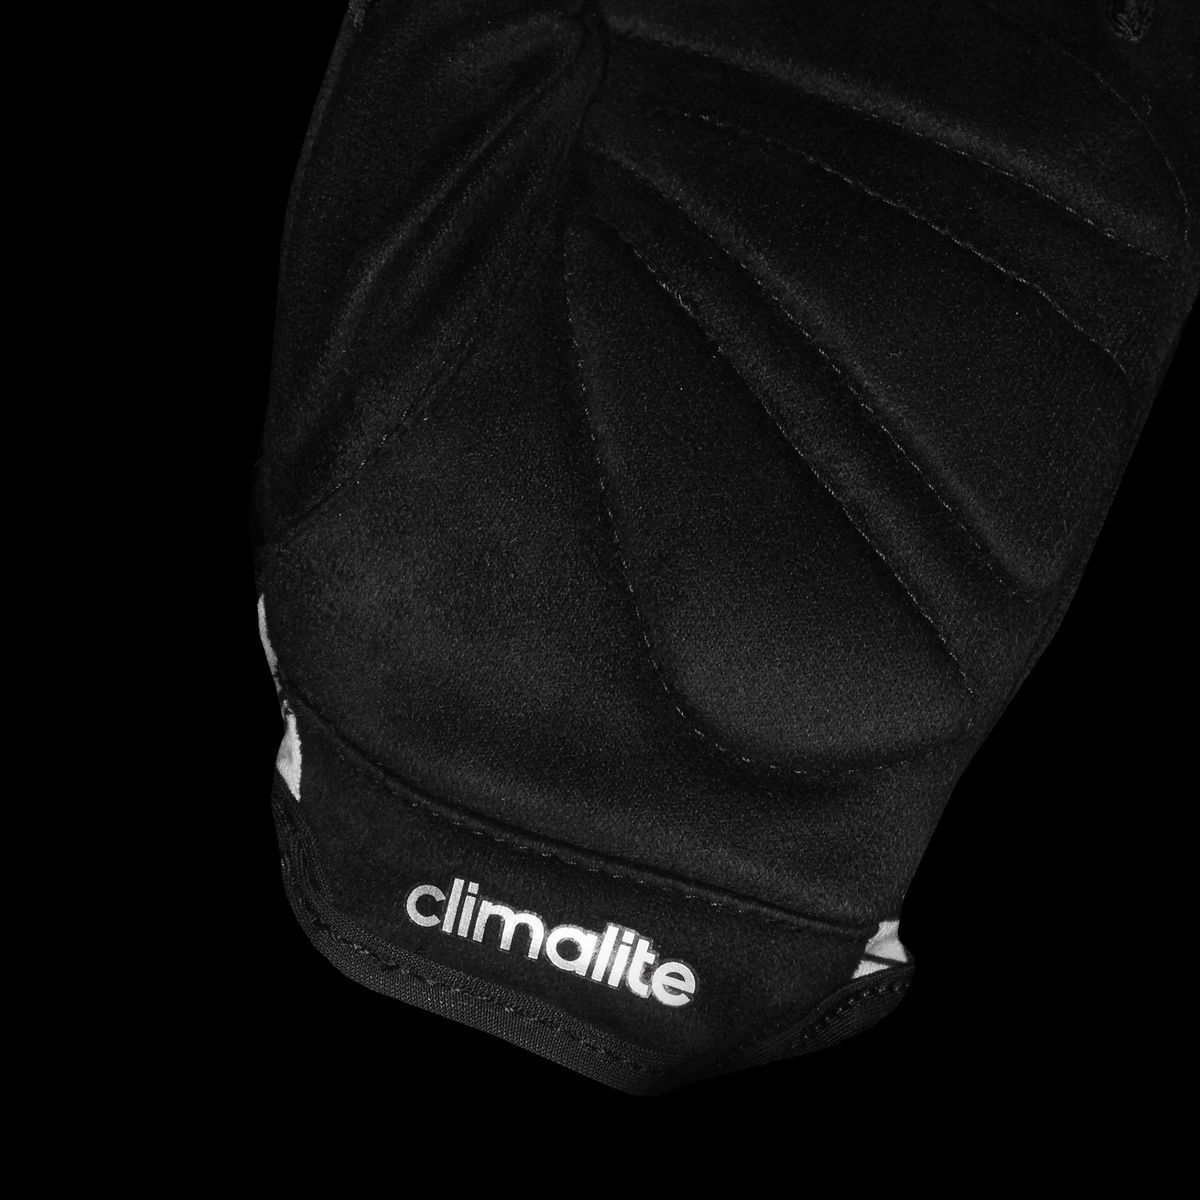   Adidas Clite Glove W G, : . CY6247.  L (22)